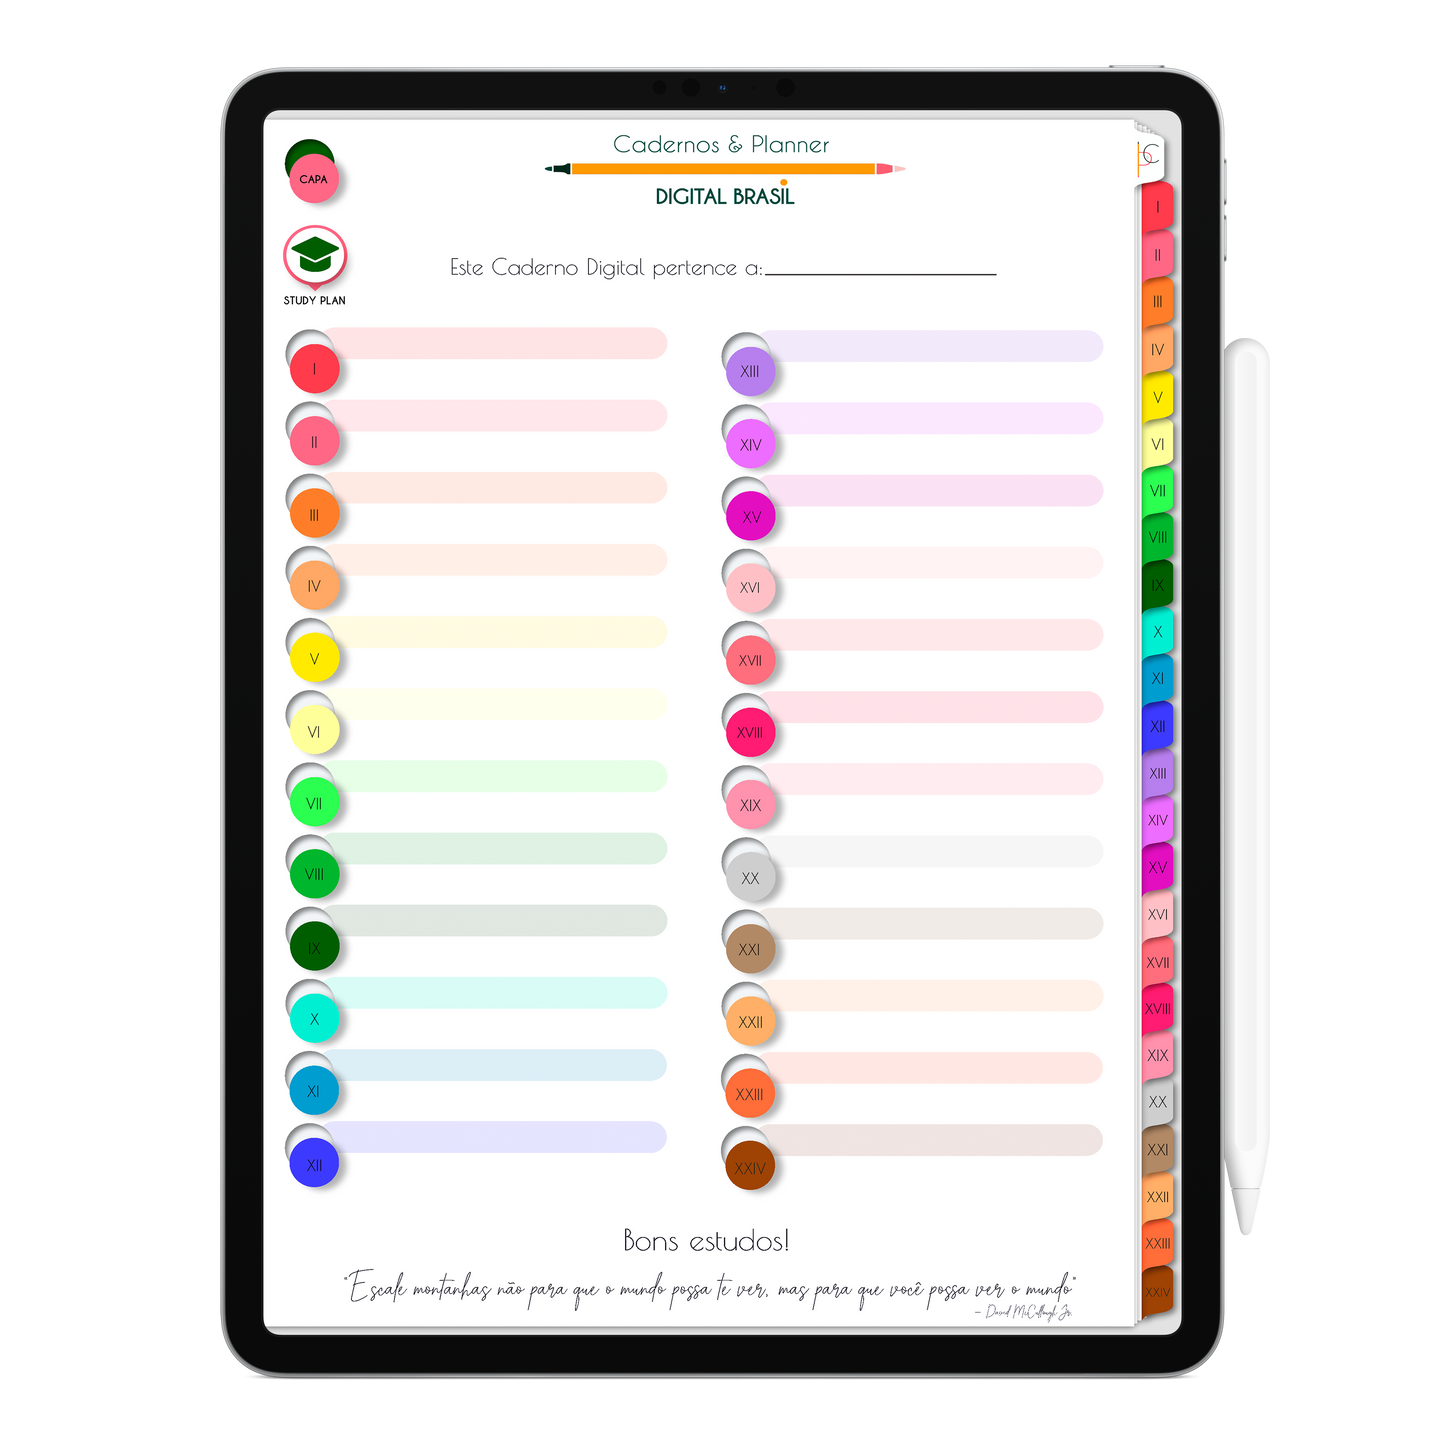 Caderno Digital Colors 24 Matérias Continuidade • Para iPad e Tablet Android • Download instantâneo